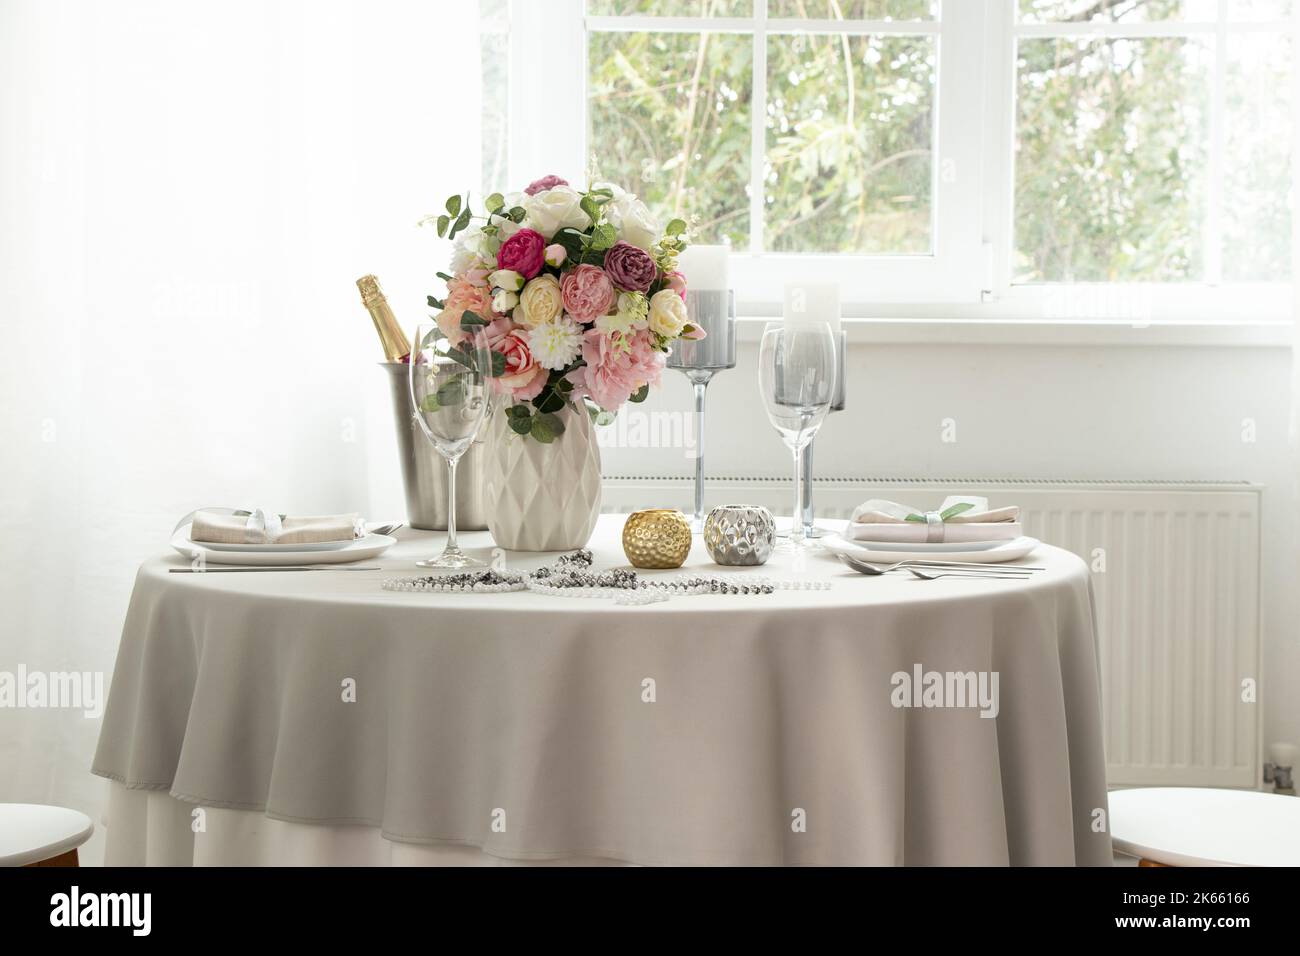 Une table de fête avec des plats de service et un seau de champagne dans un appartement près d'une fenêtre avec des murs blancs, un cadre de table de mariage Banque D'Images